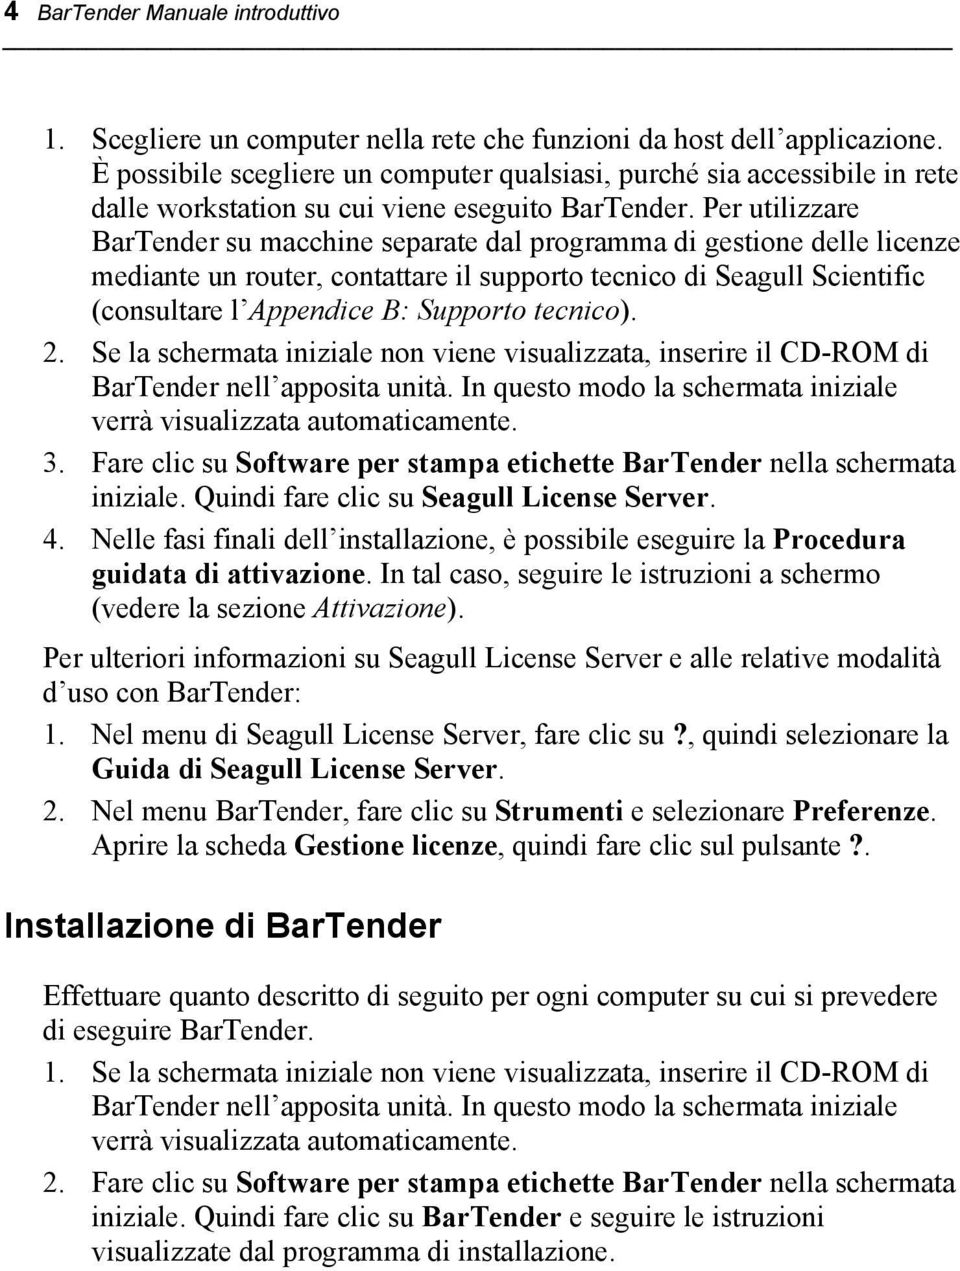 Per utilizzare BarTender su macchine separate dal programma di gestione delle licenze mediante un router, contattare il supporto tecnico di Seagull Scientific (consultare l Appendice B: Supporto